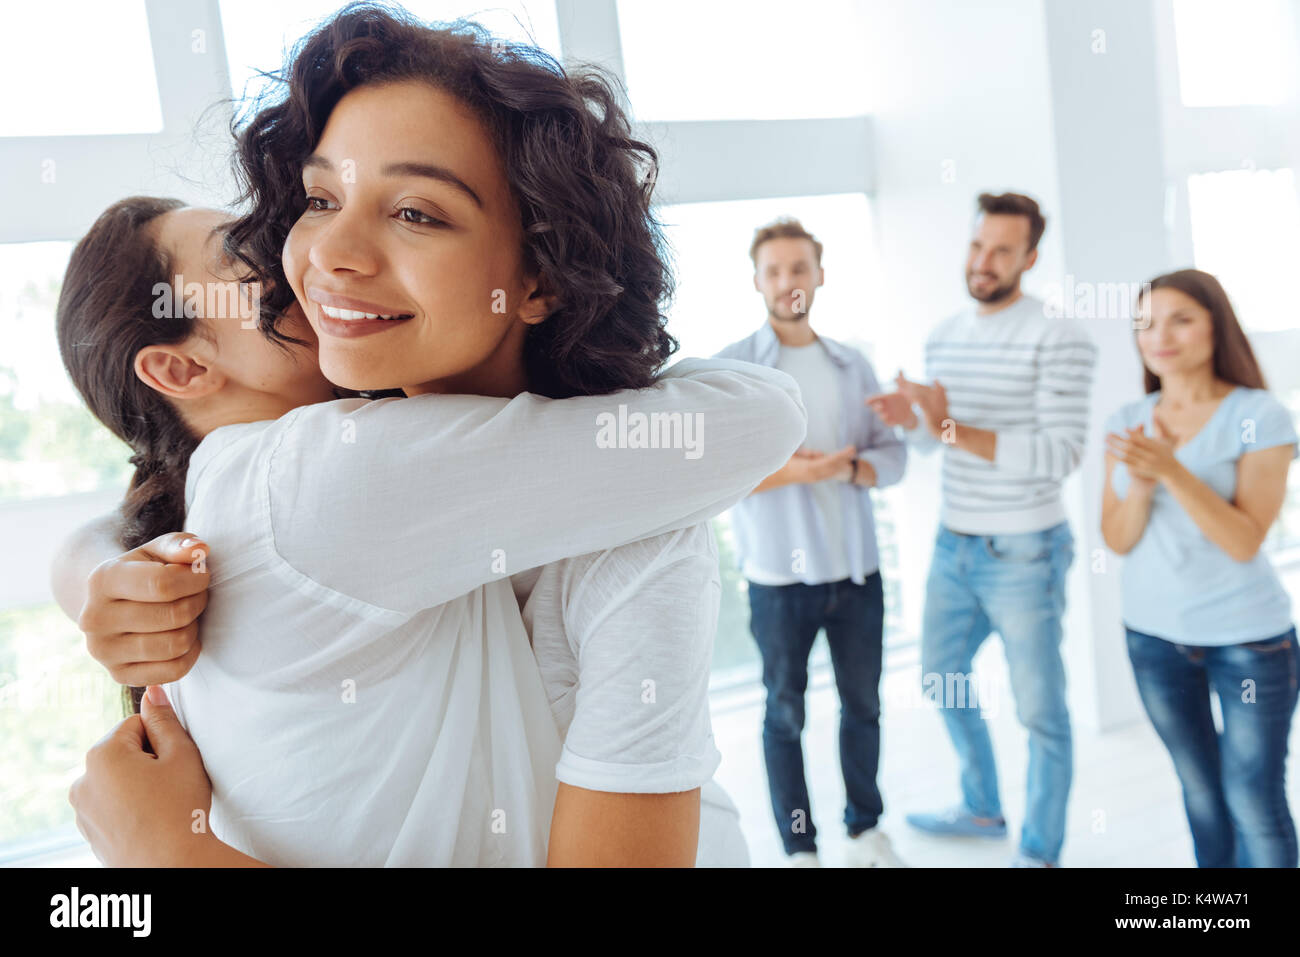 Gioioso donna positivo abbracciando il suo amico Foto Stock